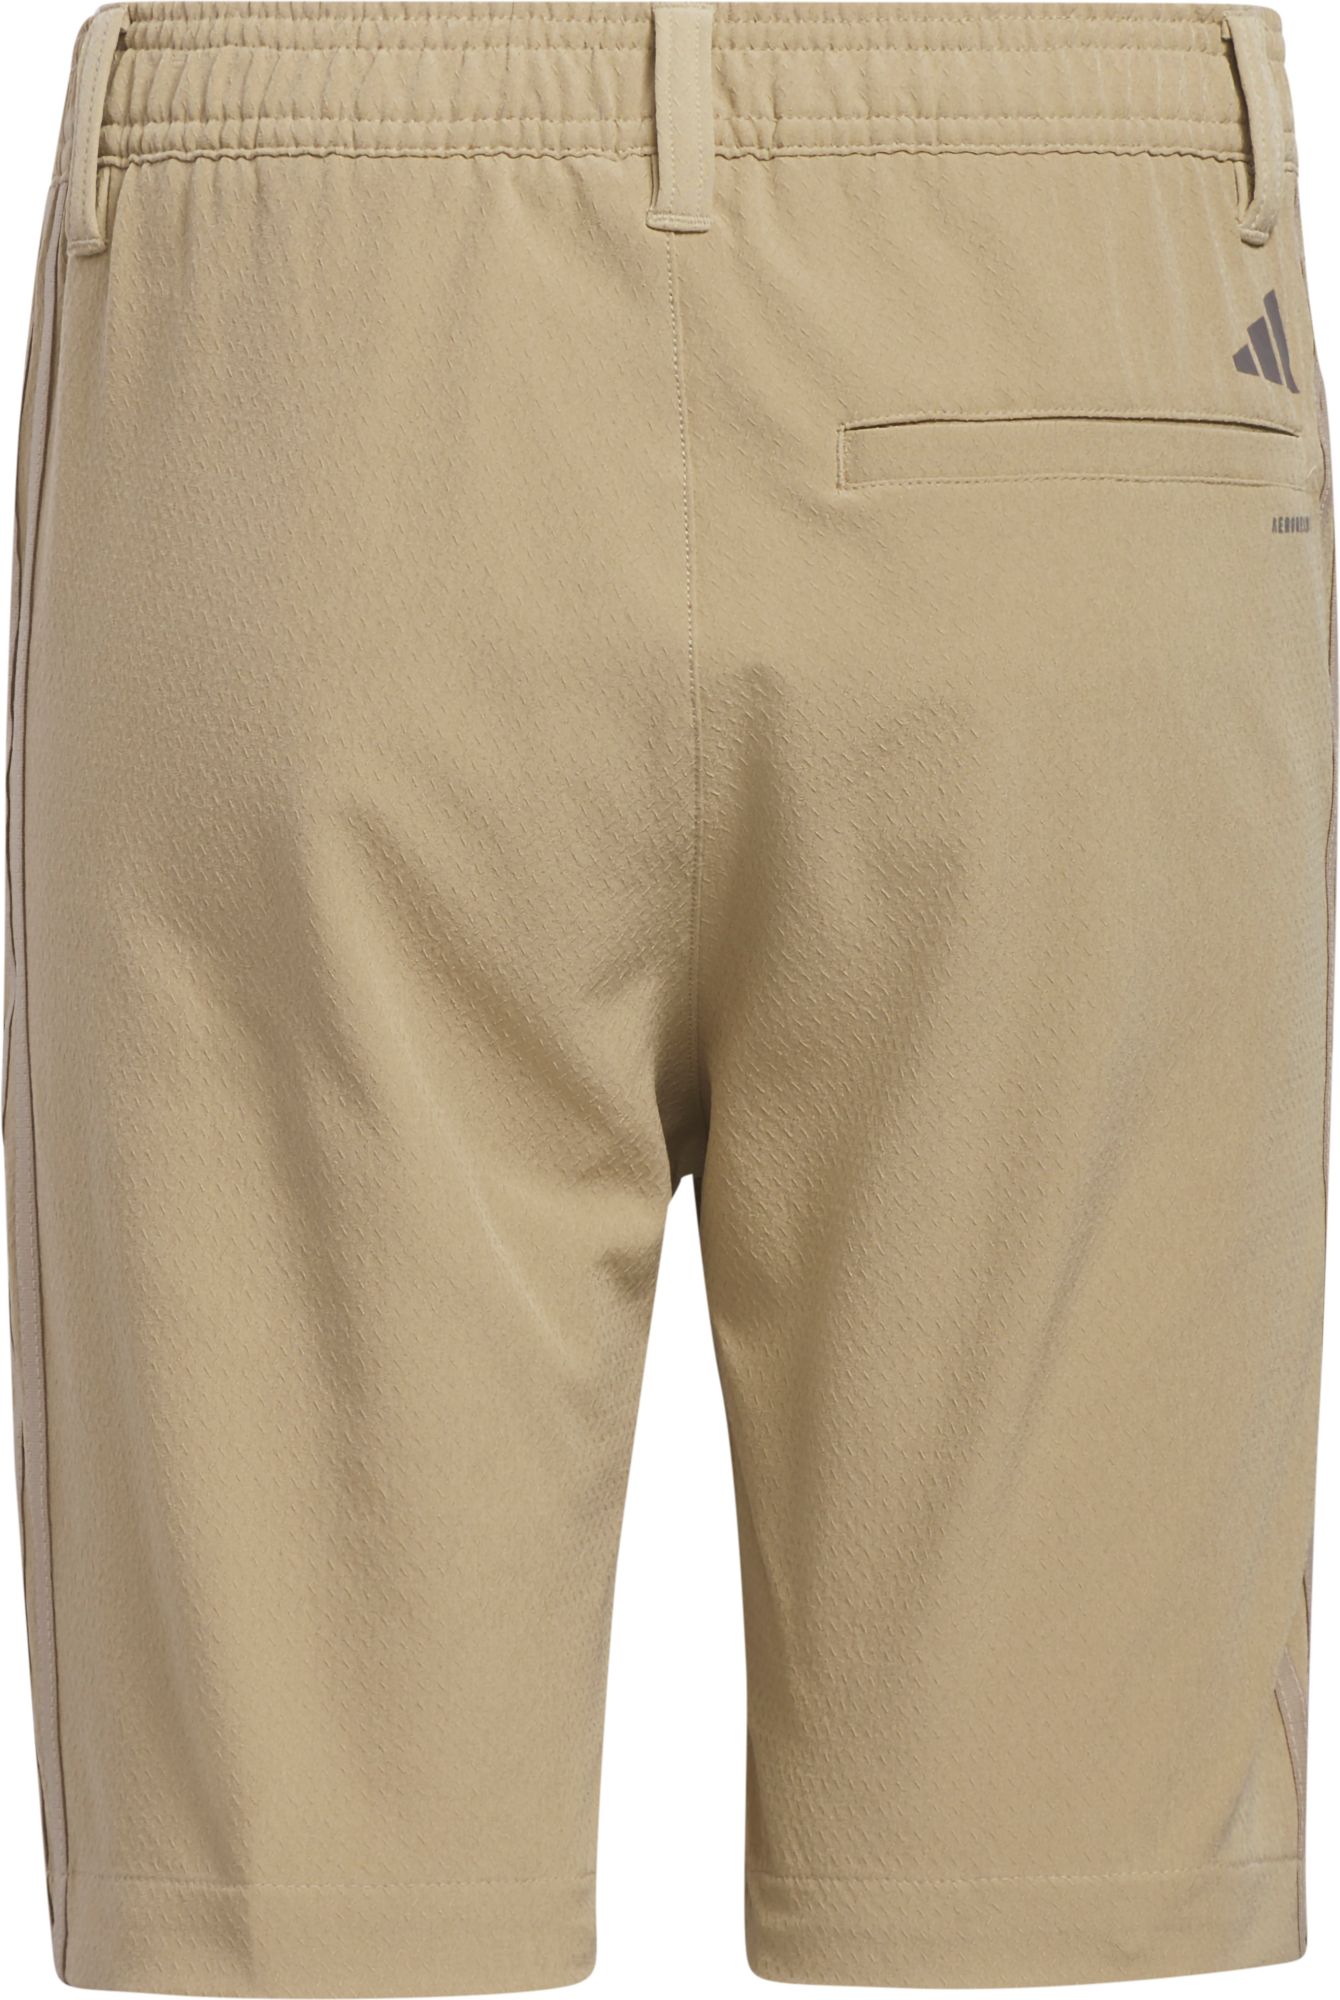 adidas Boys' Sport Golf Shorts